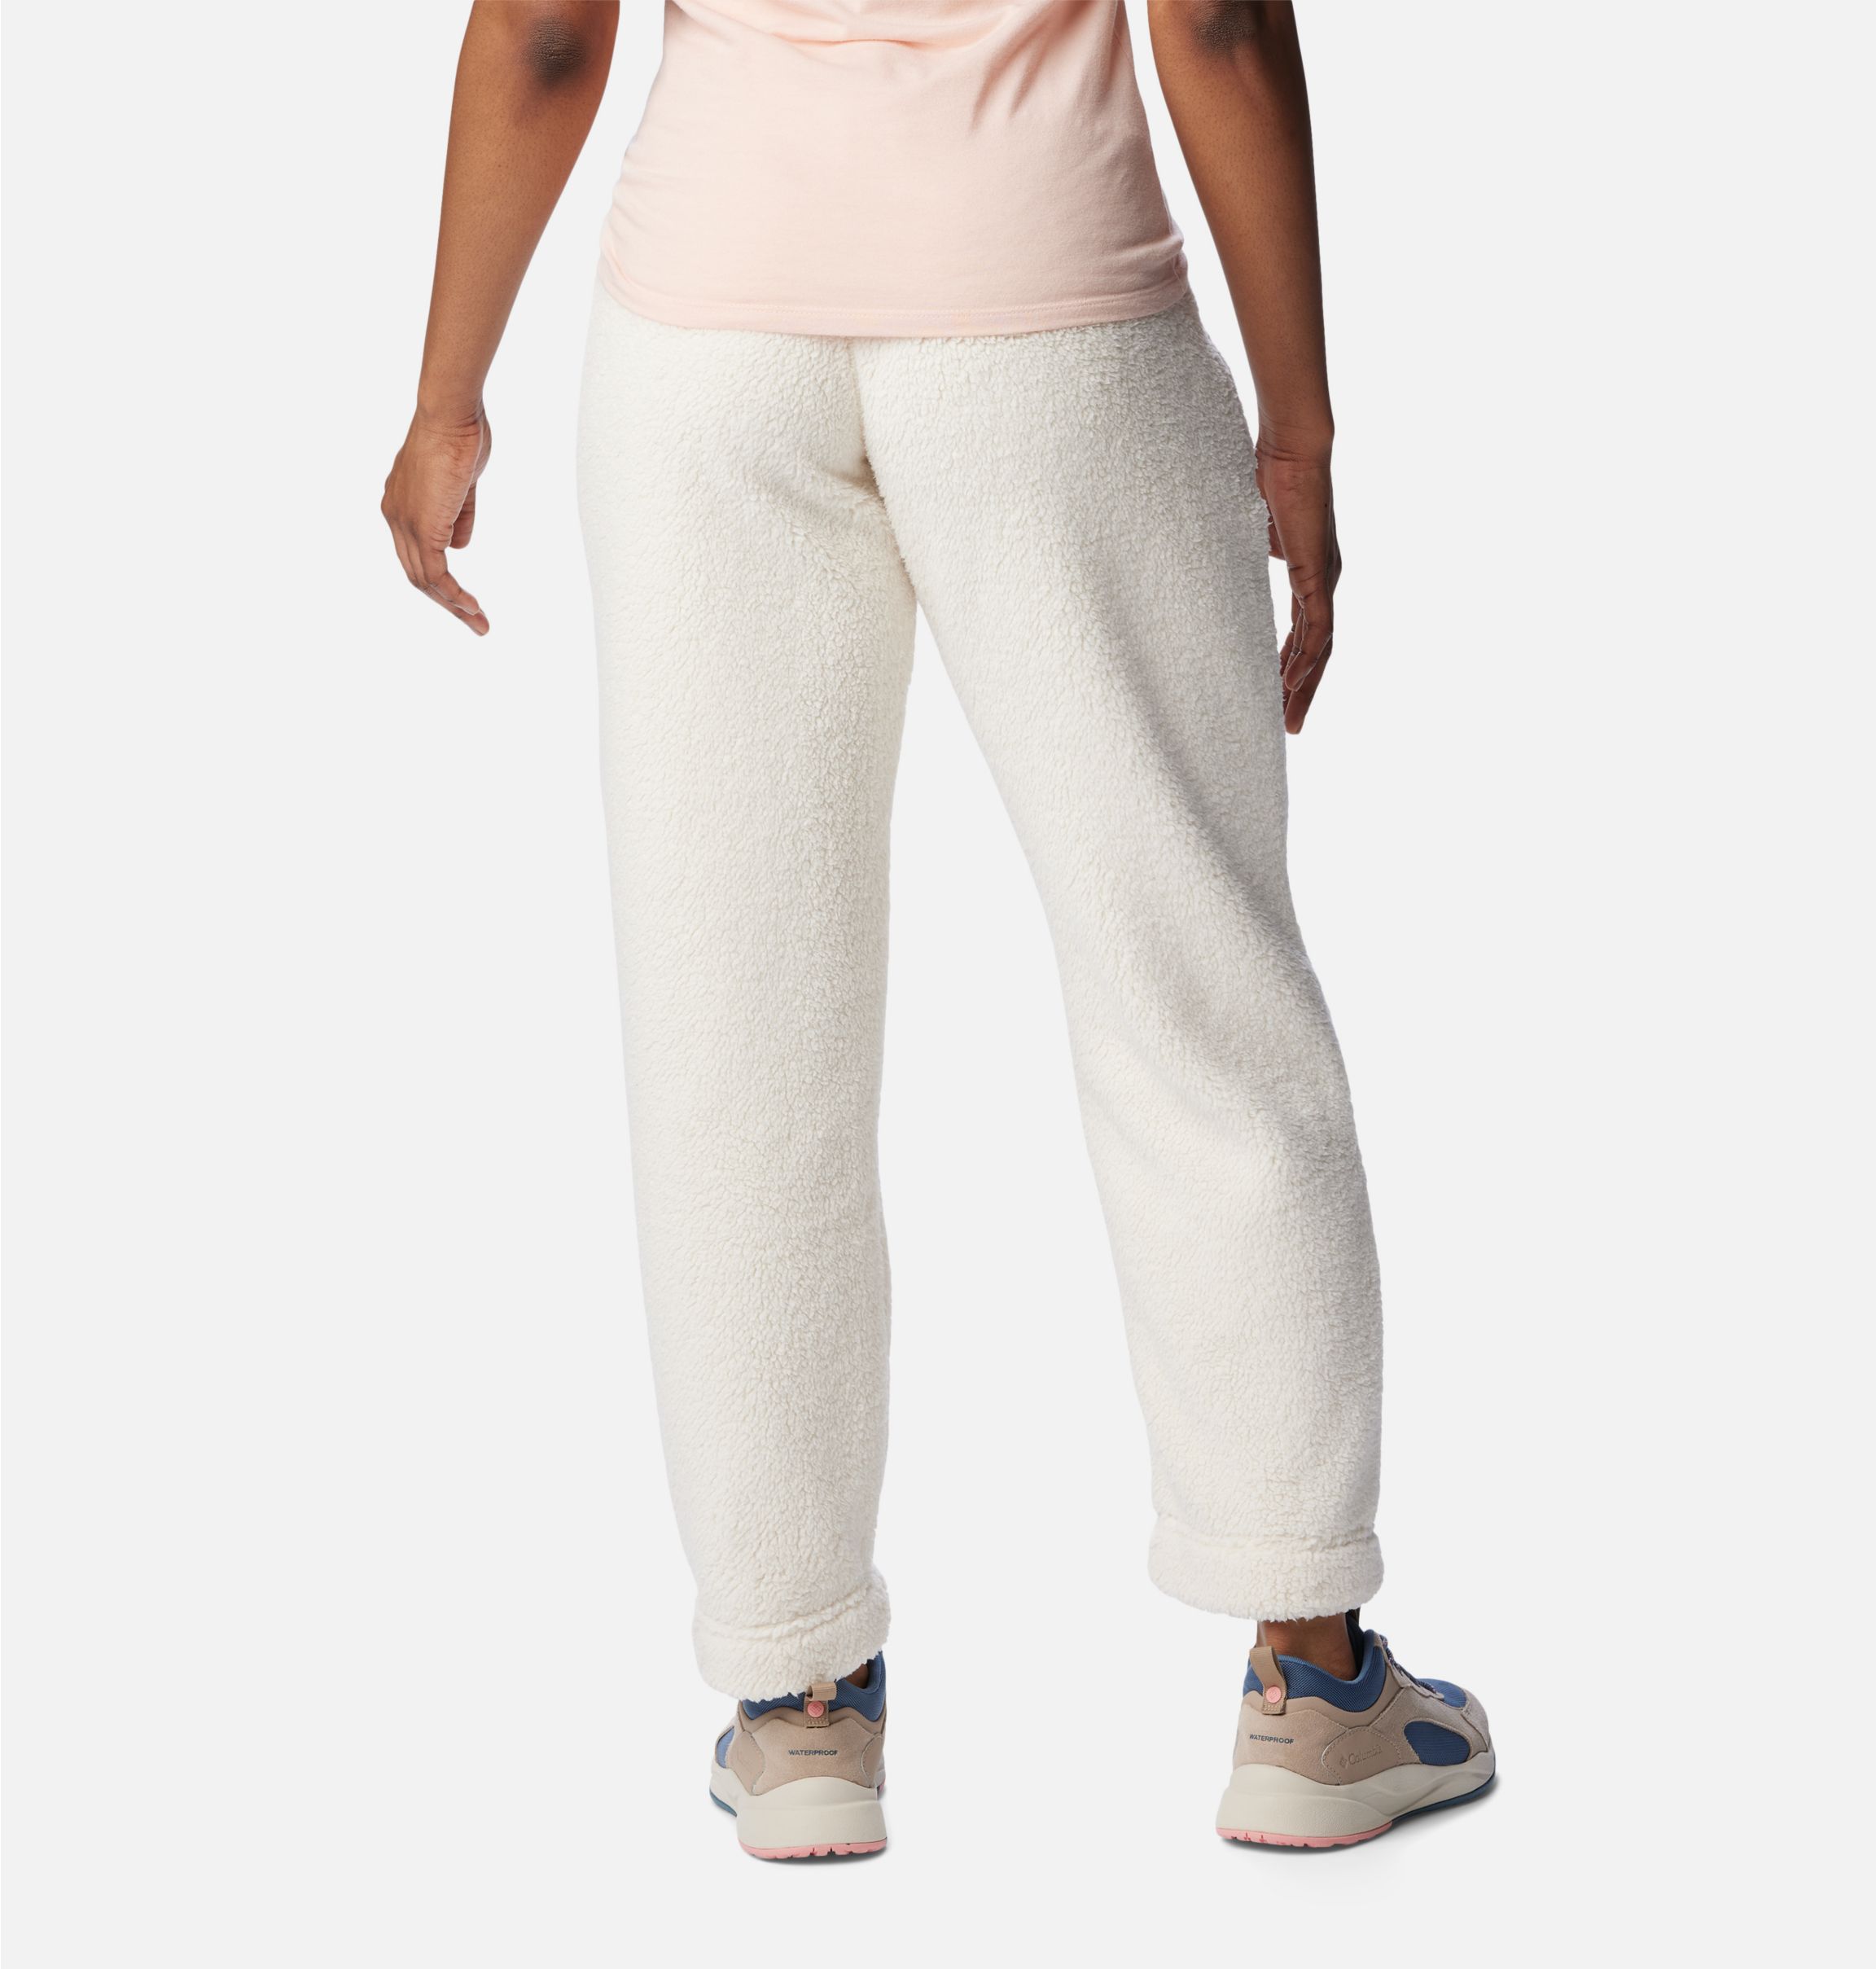 West Bend™ Sportswear Columbia | Frauen für Pullon Hose